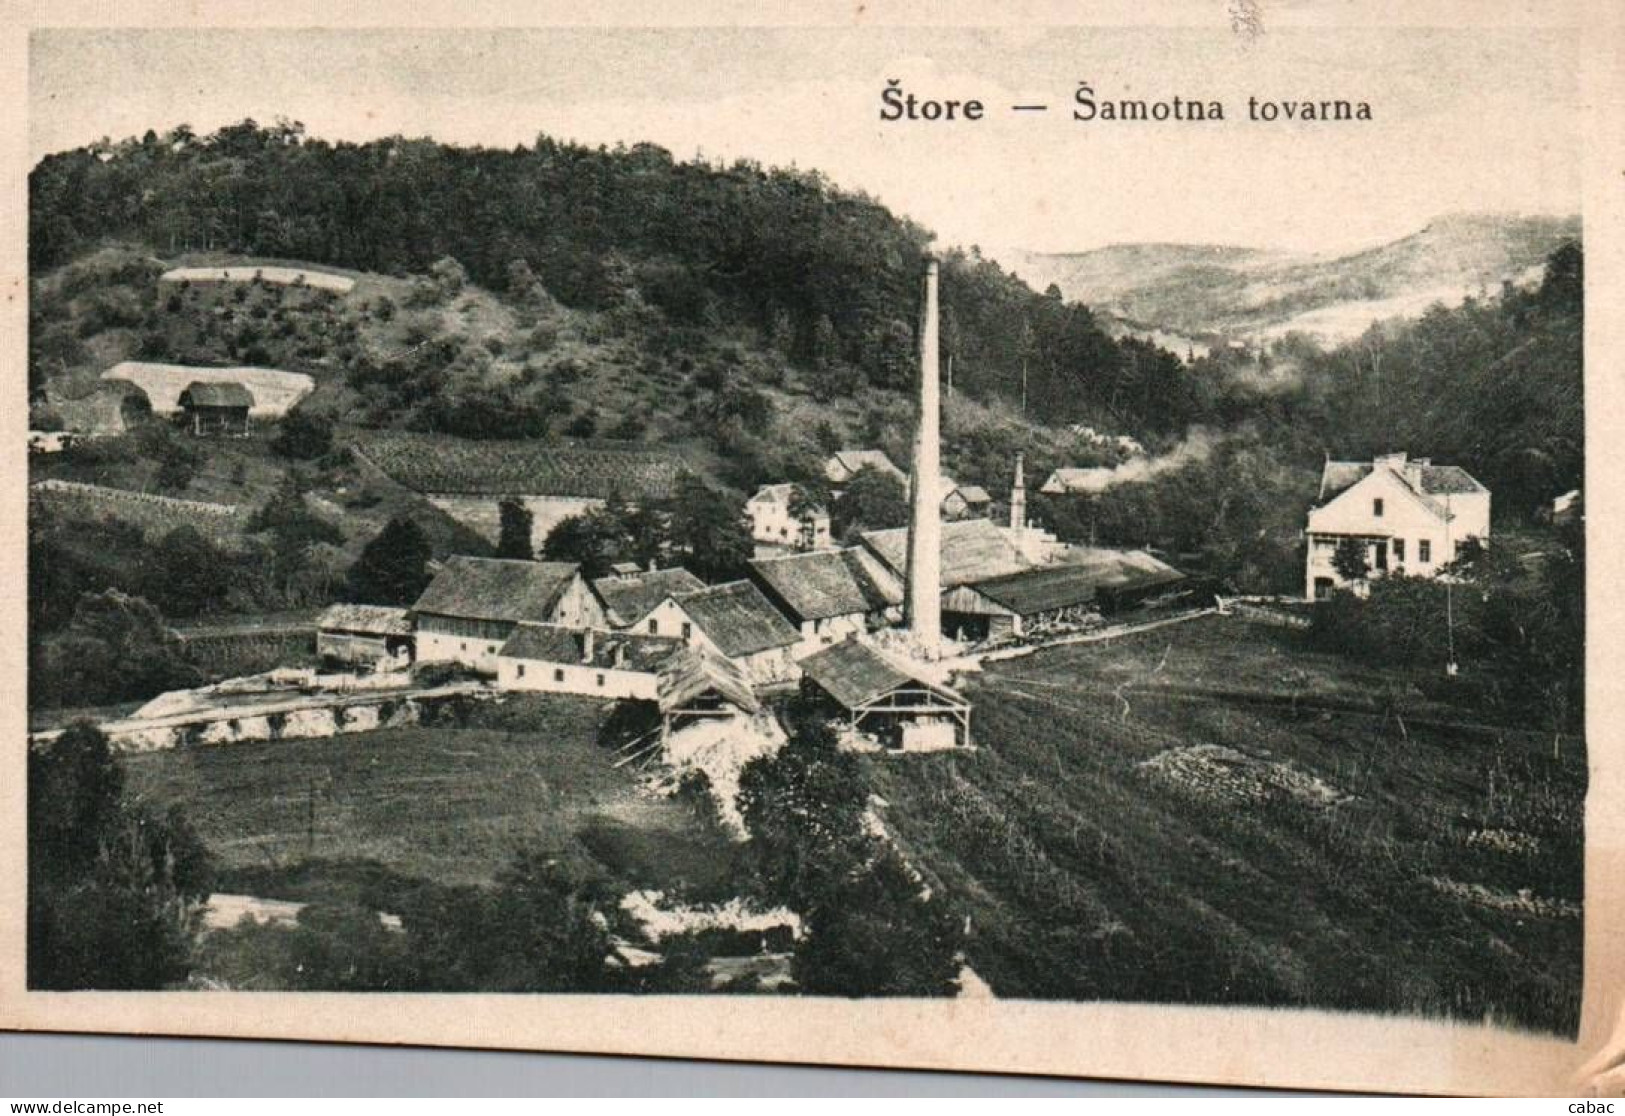 Štore, šamotna Tovarna, 1920-ta Ali 1930-ta, Storach, Ironworks, Mine, Štajerska, Celje, Industrija, Rudnik Štore - Slowenien